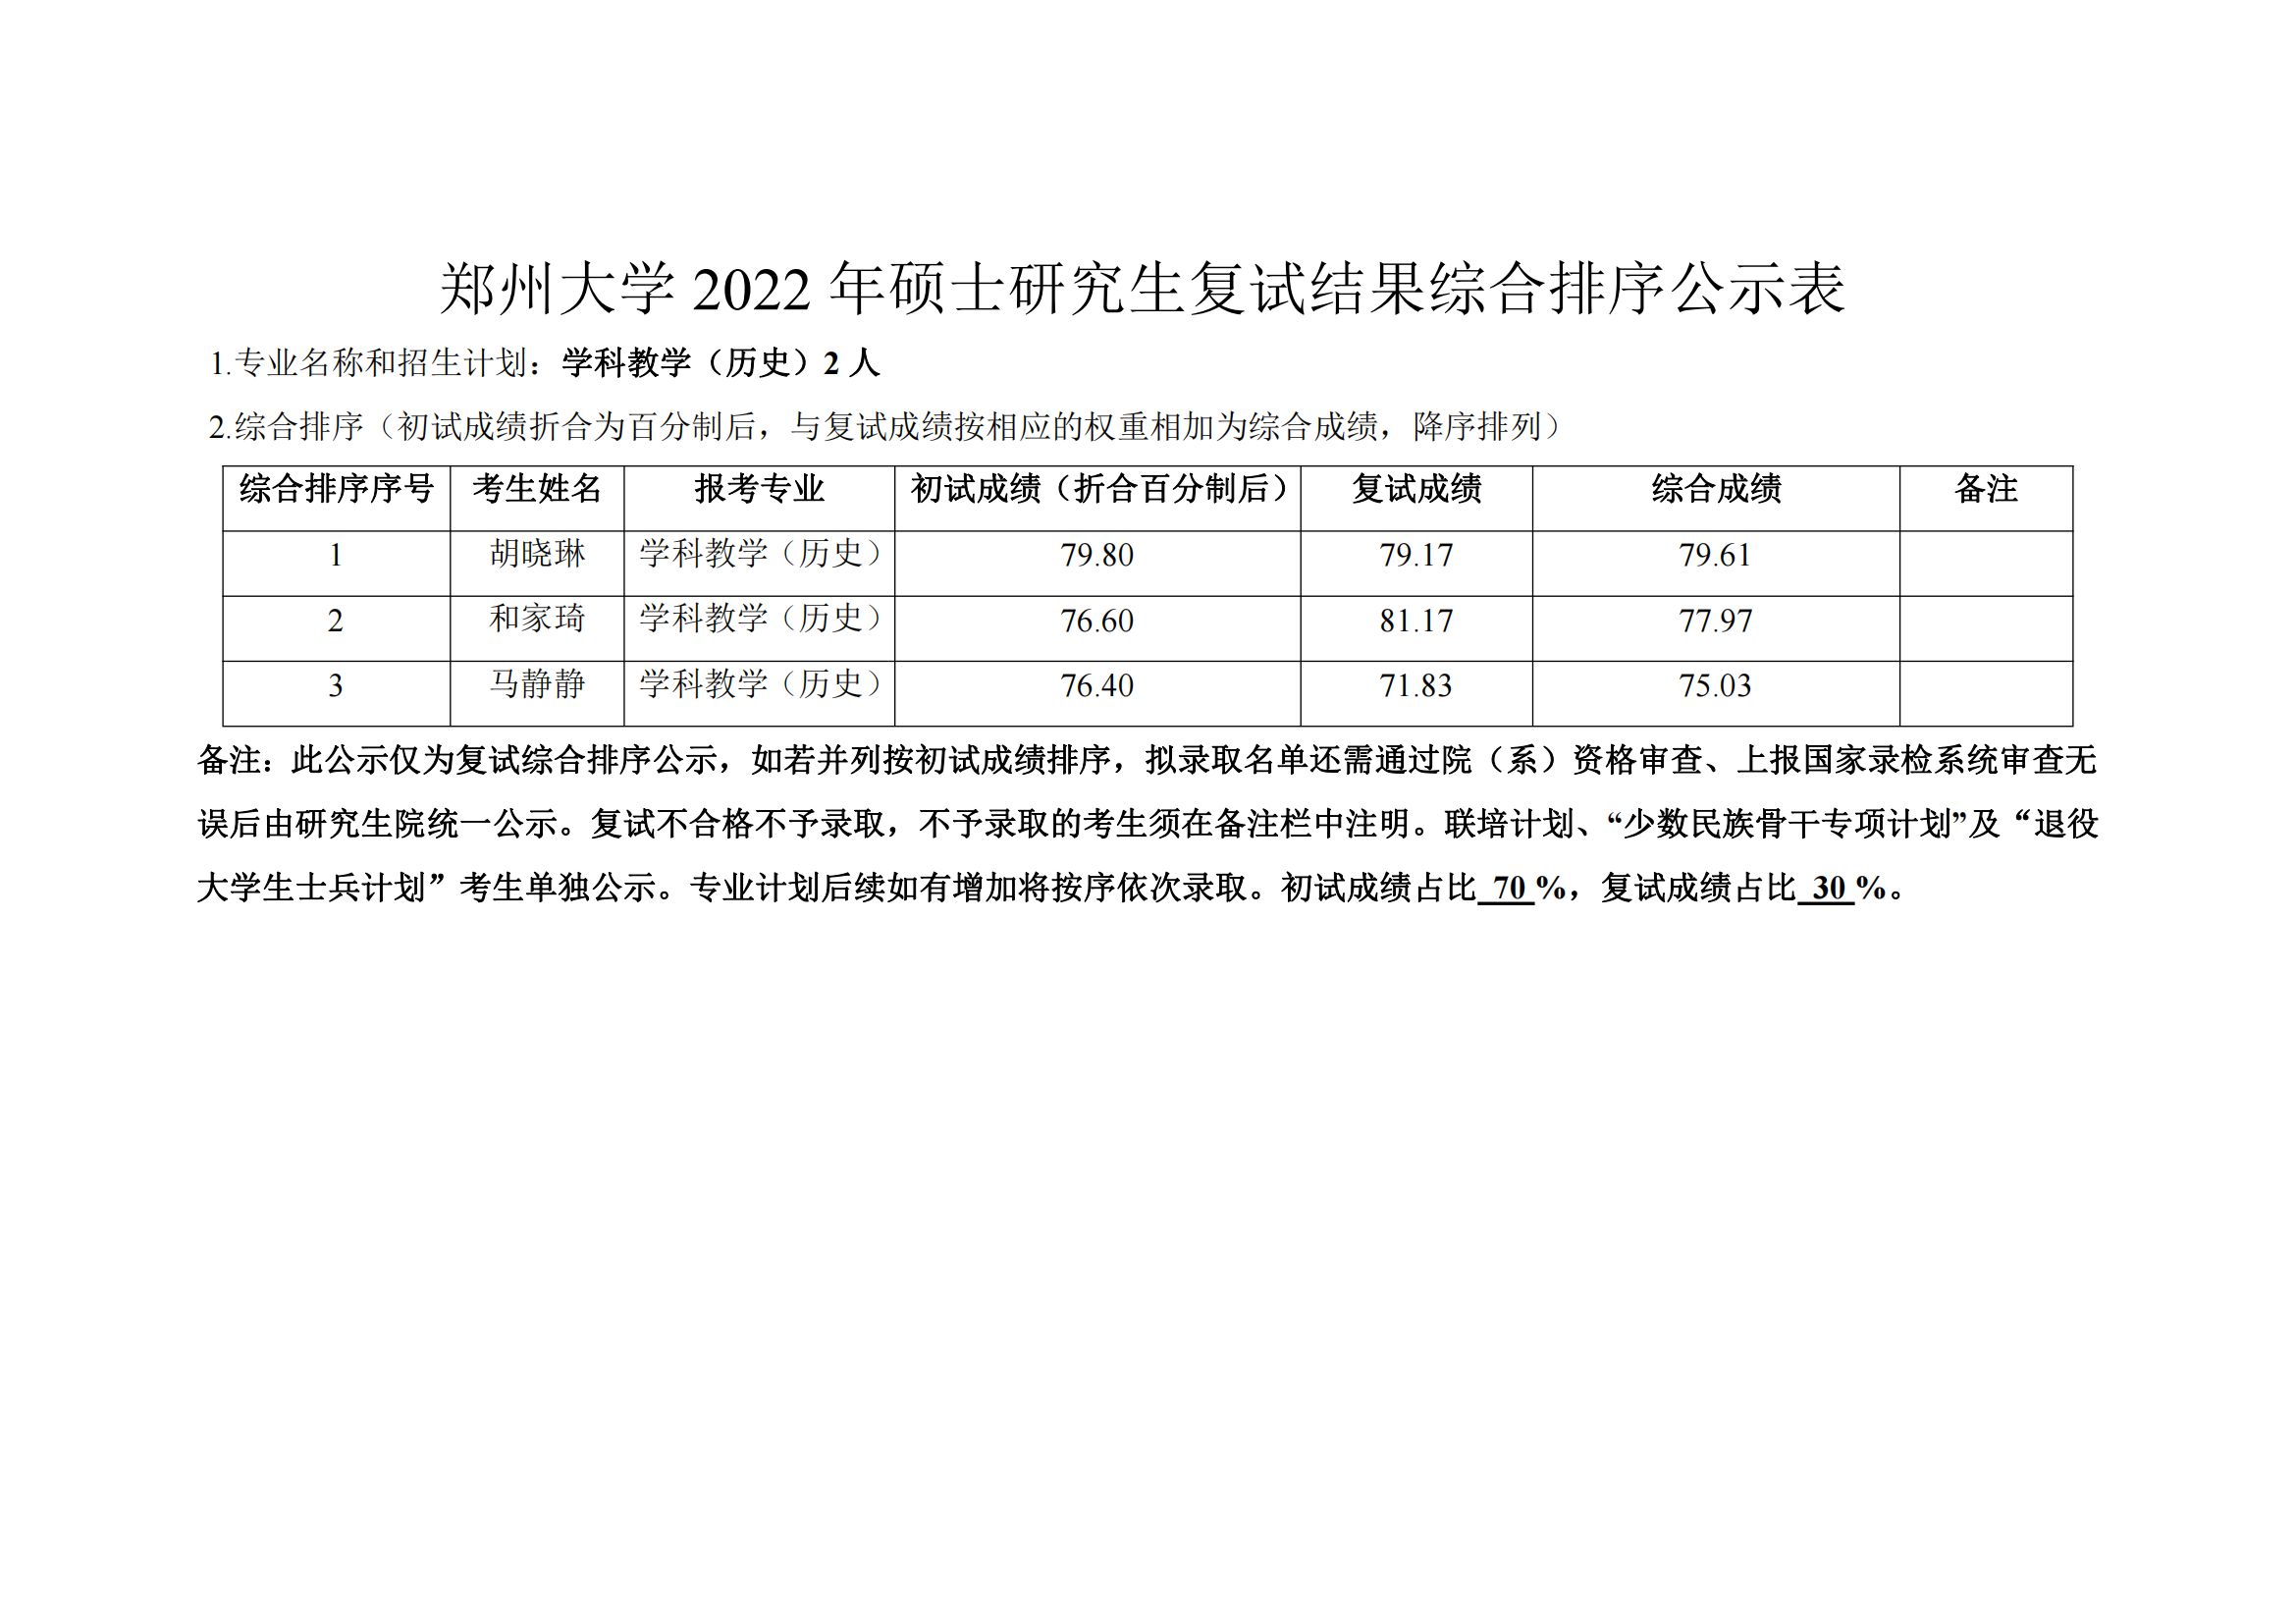 郑州大学教育学院2022年硕士研究生复试结果综合排序公示表_16.png